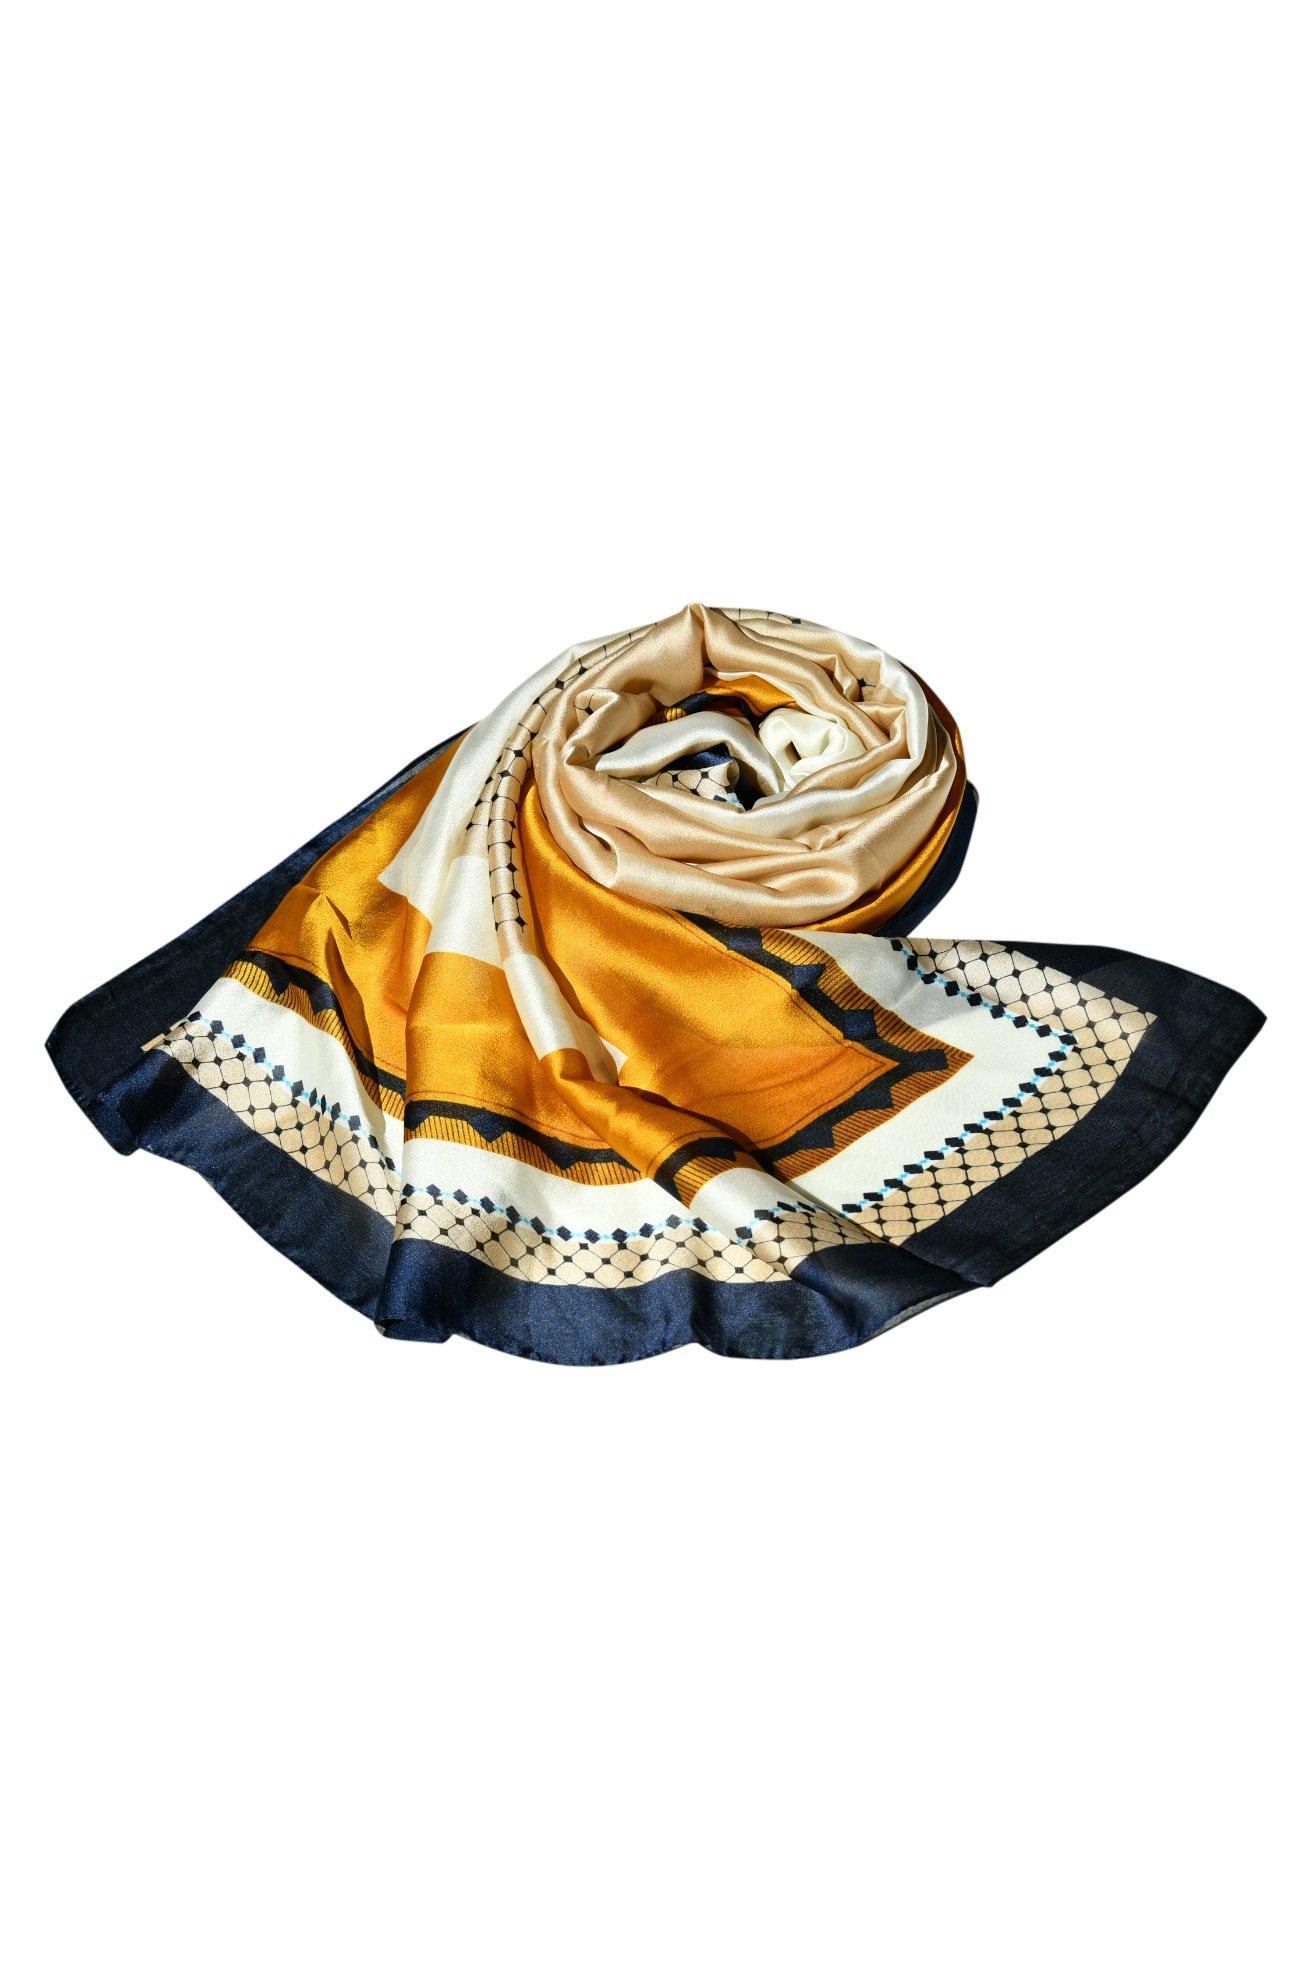 Высококачественная шаль, модельерский шелковый шарф с принтом для женщин, стильный шелковый платок, вечеринка, элегантность для любого наряда Blue Chilli, мультиколор дизайнерская шаль с французской лошадью шелковый шарф 130 см саржевый шарф роскошный саржевый шарф роскошный дизайнерский шелковый шарф